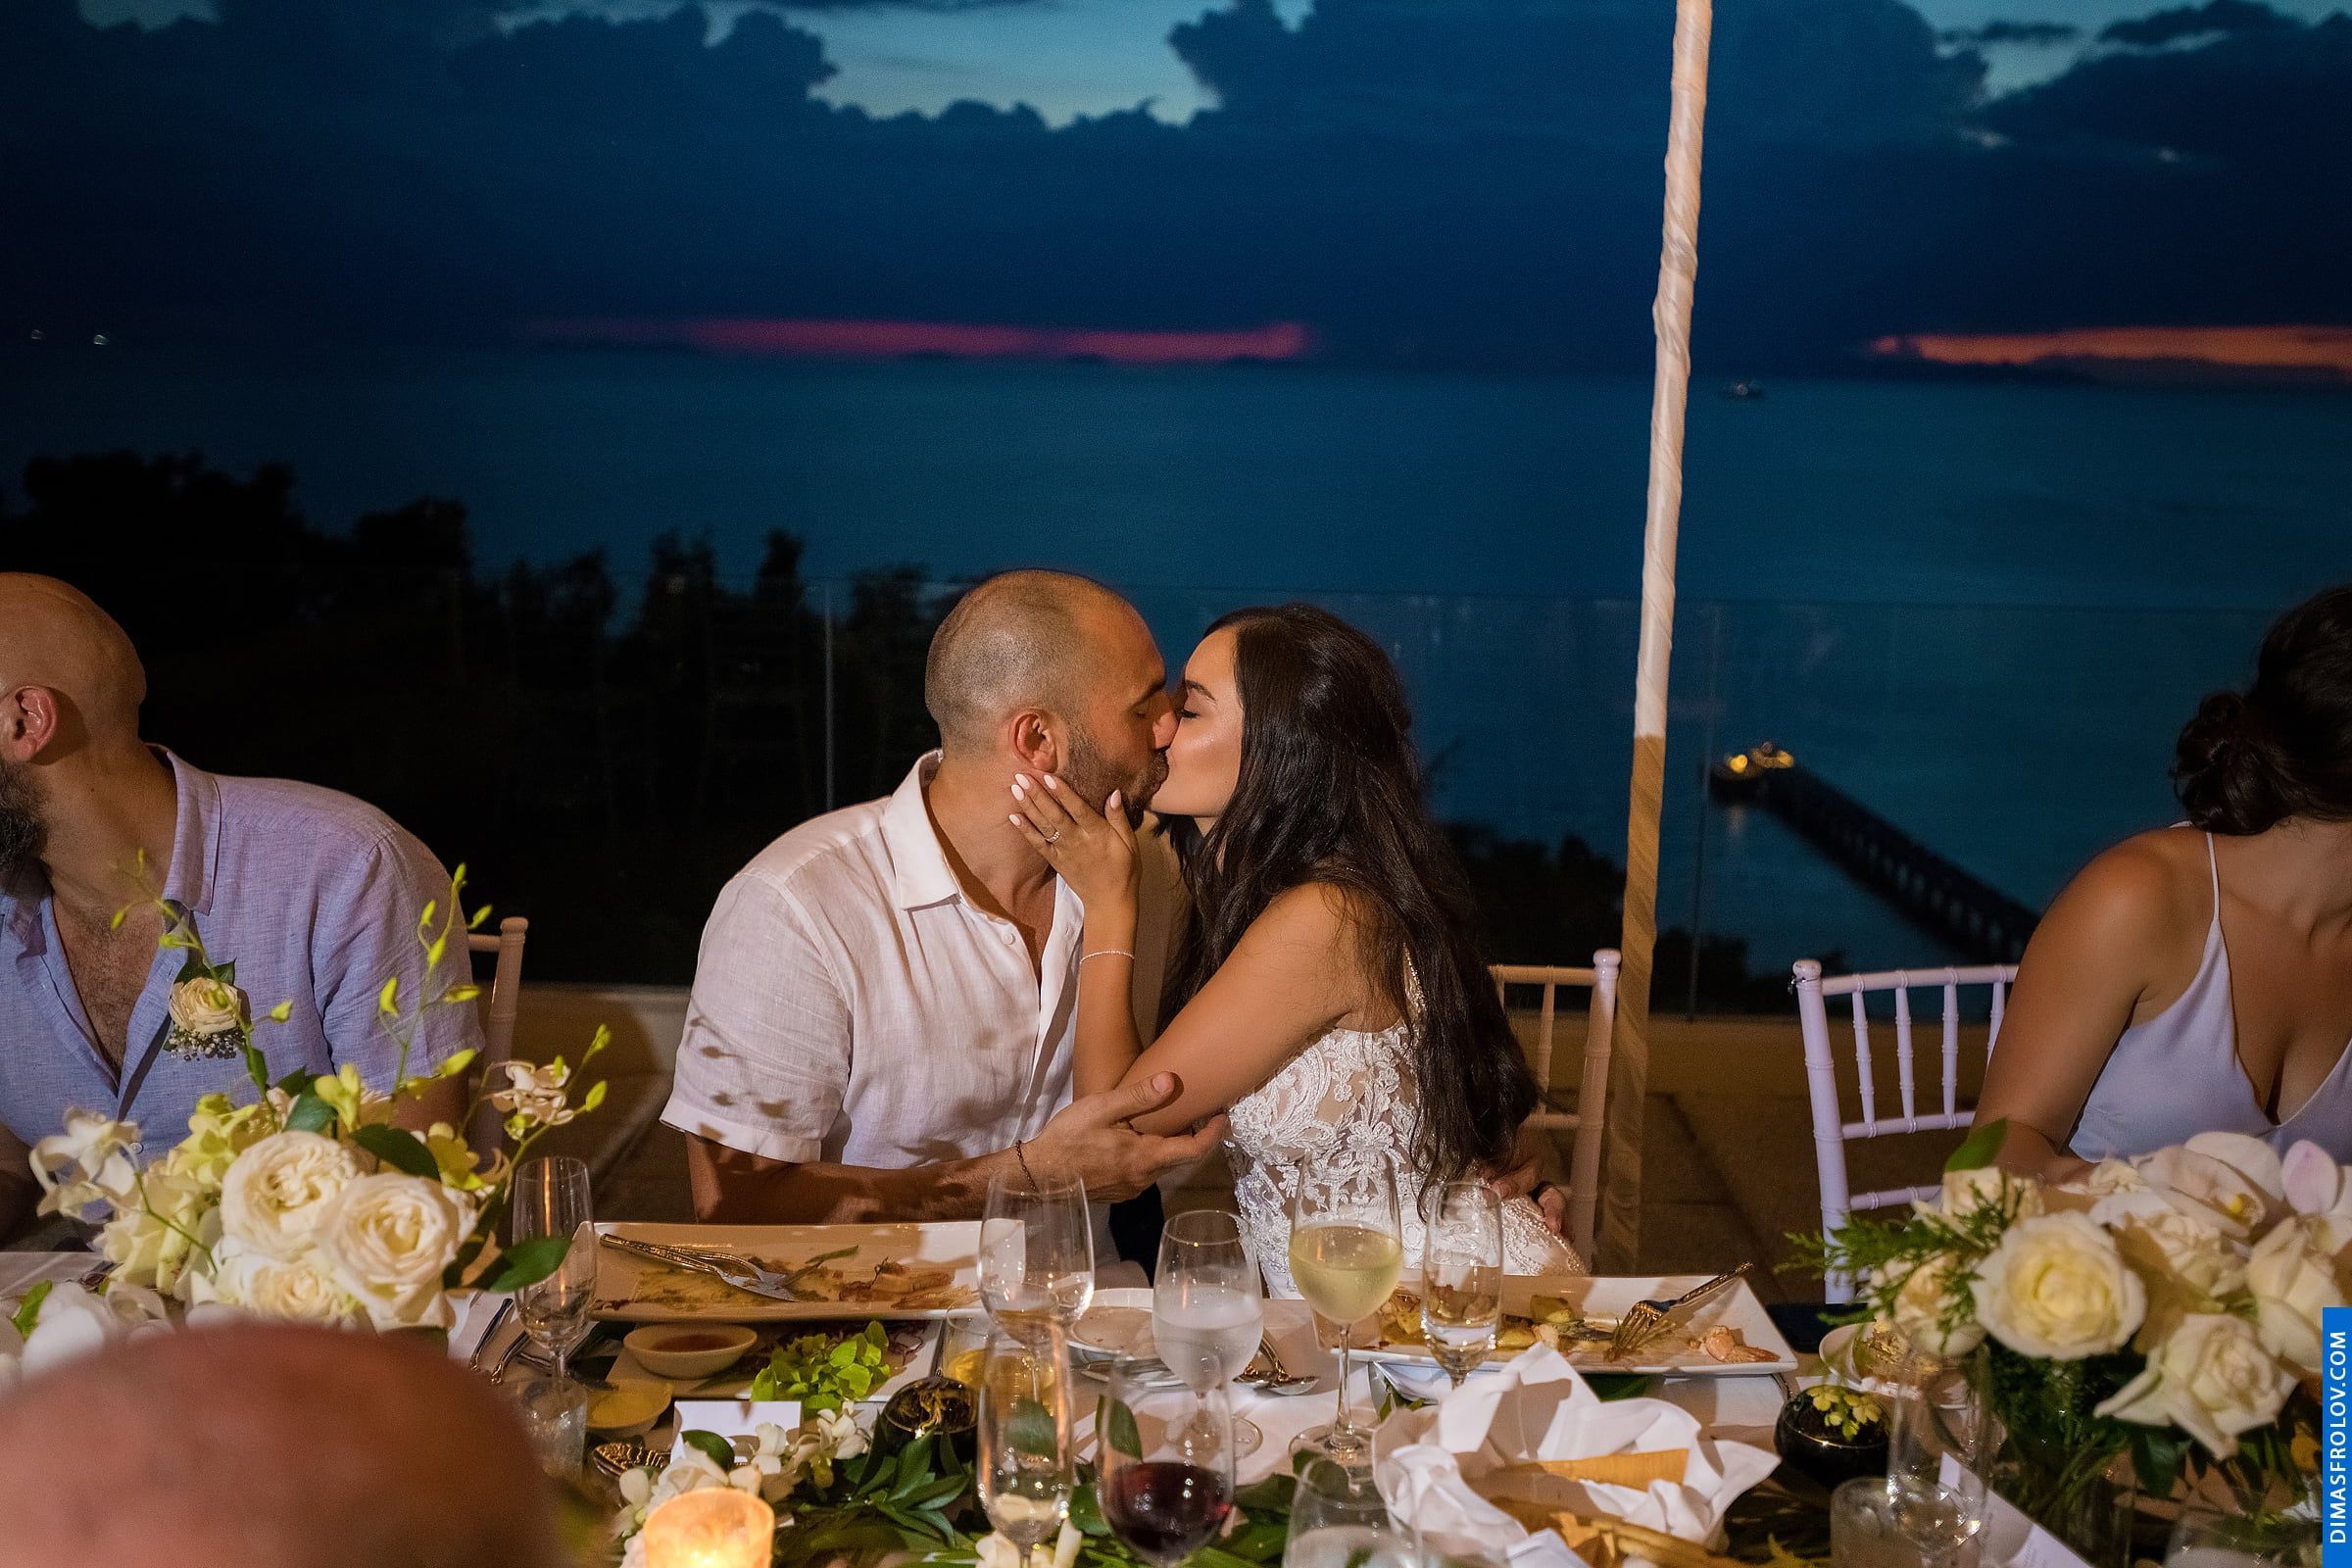 พิธีแต่งงาน ณ โรงแรมอินเตอร์คอนติเนนตัล เกาะสมุย - Natalie & Simon. บาทต่อภาพ 48267 (2023-05-04 03:54:38)